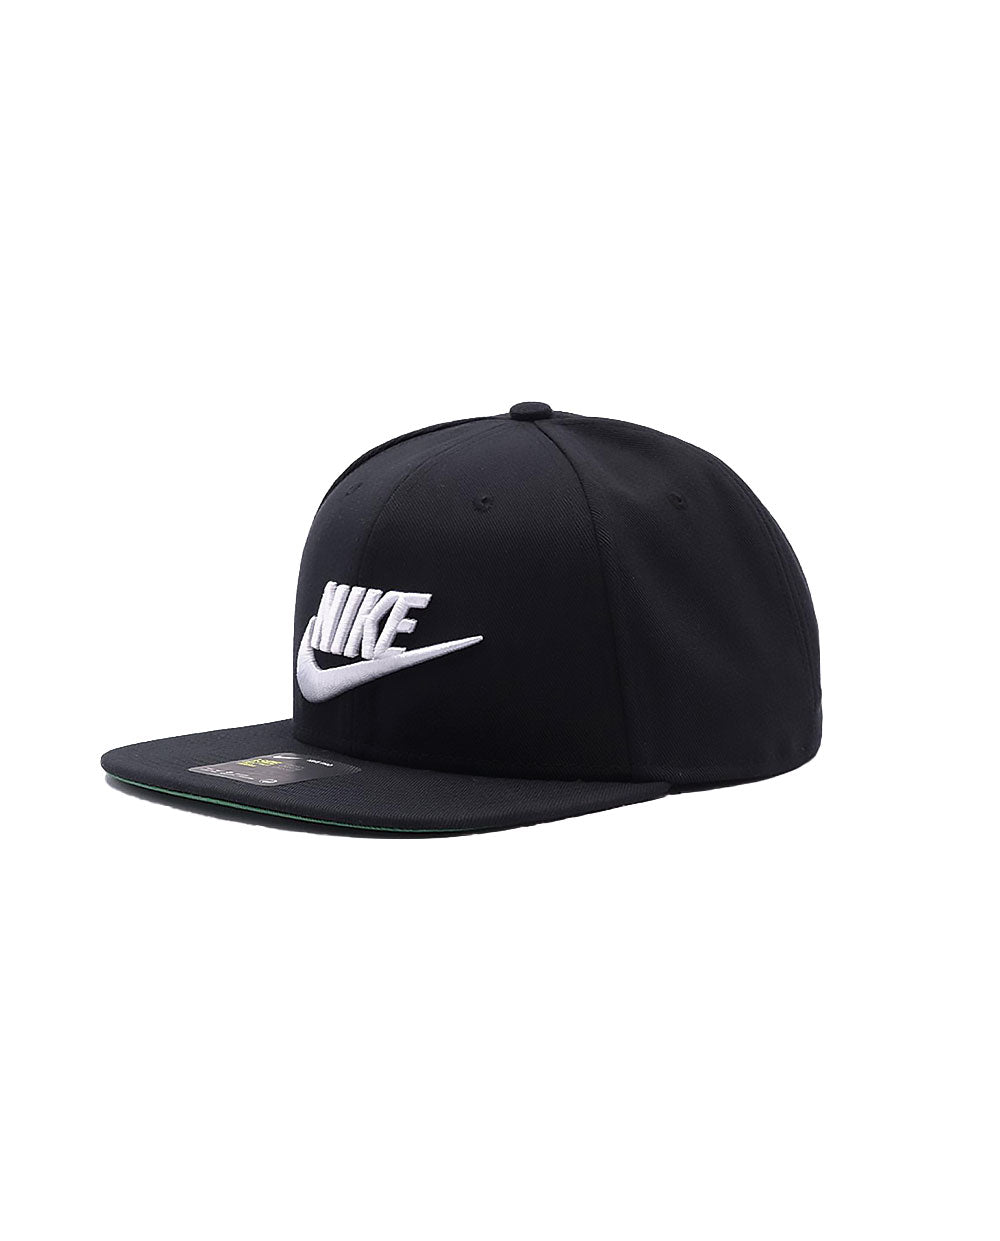 Nike Cap Sportswear Dri-FIT Black and White